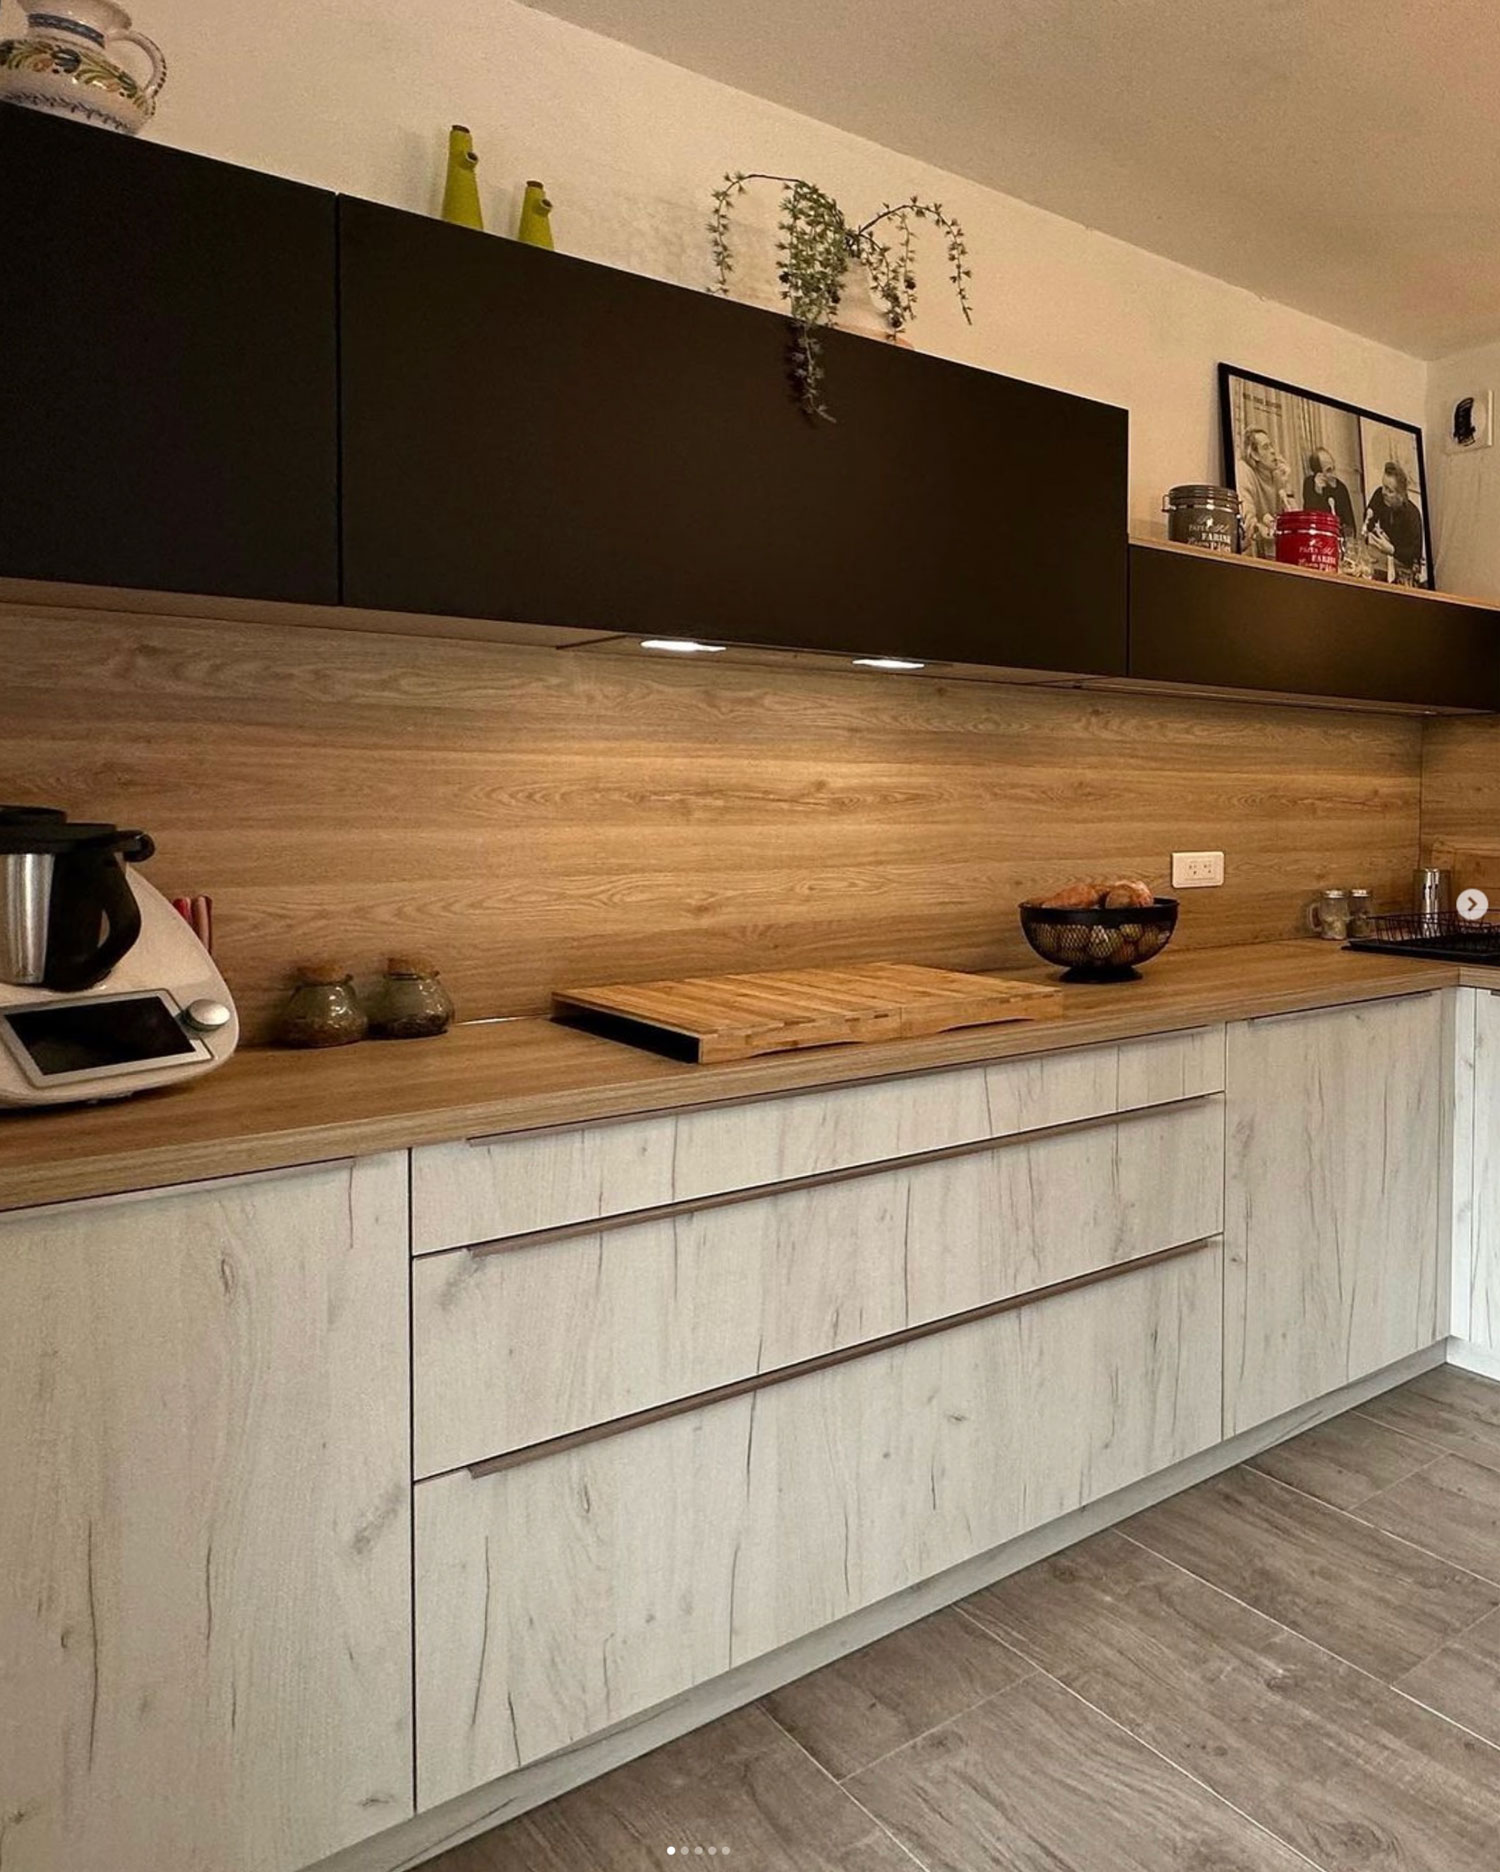 Sistemas de apertura en muebles de cocina: ventajas e inconvenientes